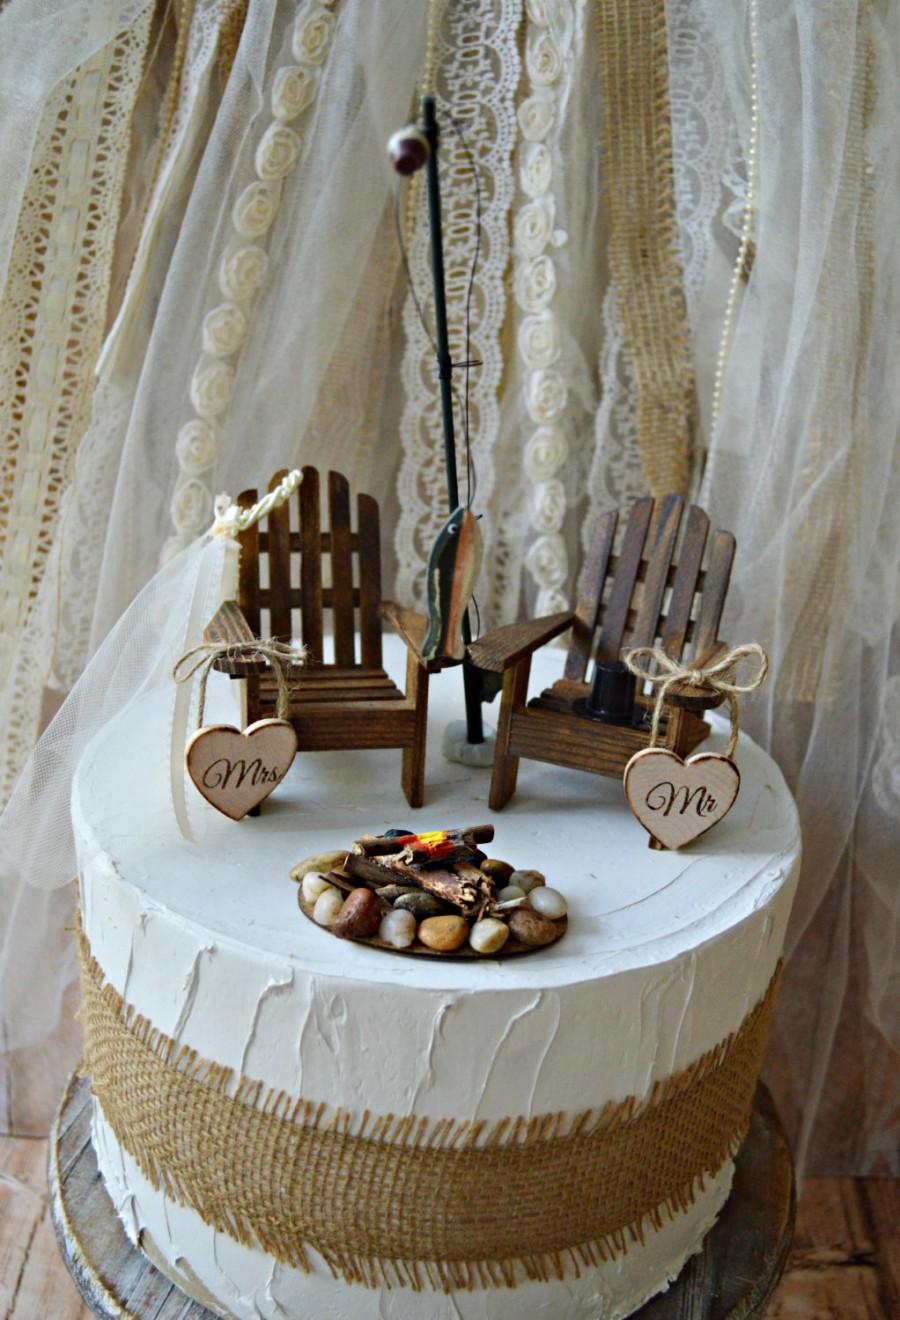 زفاف - hunting-camping-fishing-outdoors-wedding-cake topper-fishing groom-lake house-themed-wood chairs-bride and groom-camp fire-fishing pole